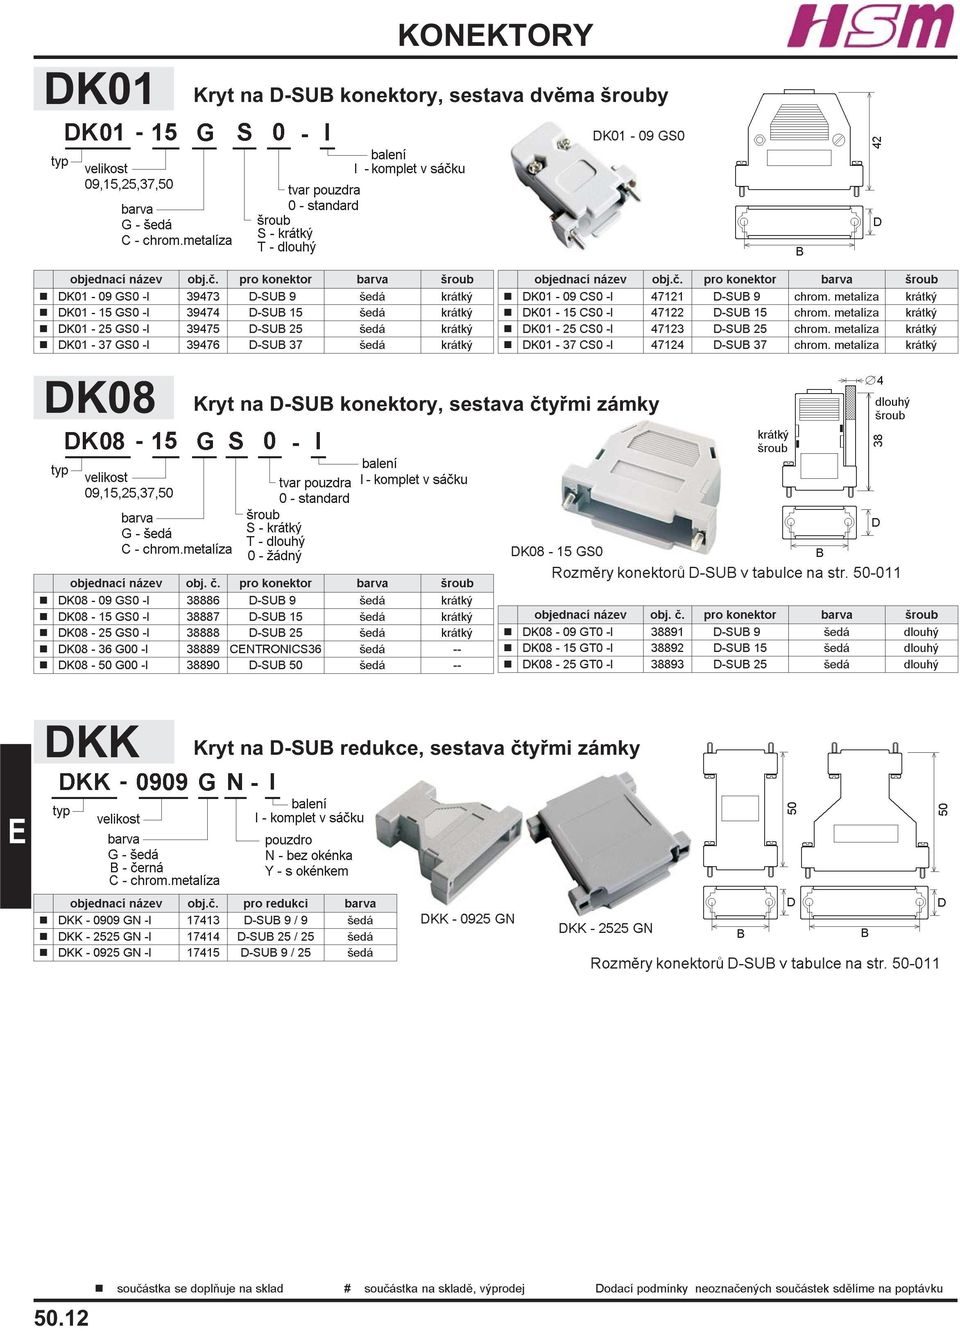 objednací název obj.è. pro konektor barva šroub n DK01-09 CS0 -I 47121 D-SUB 9 chrom. metalíza krátký n DK01-15 CS0 -I 47122 D-SUB 15 chrom. metalíza krátký n DK01-25 CS0 -I 47123 D-SUB 25 chrom.